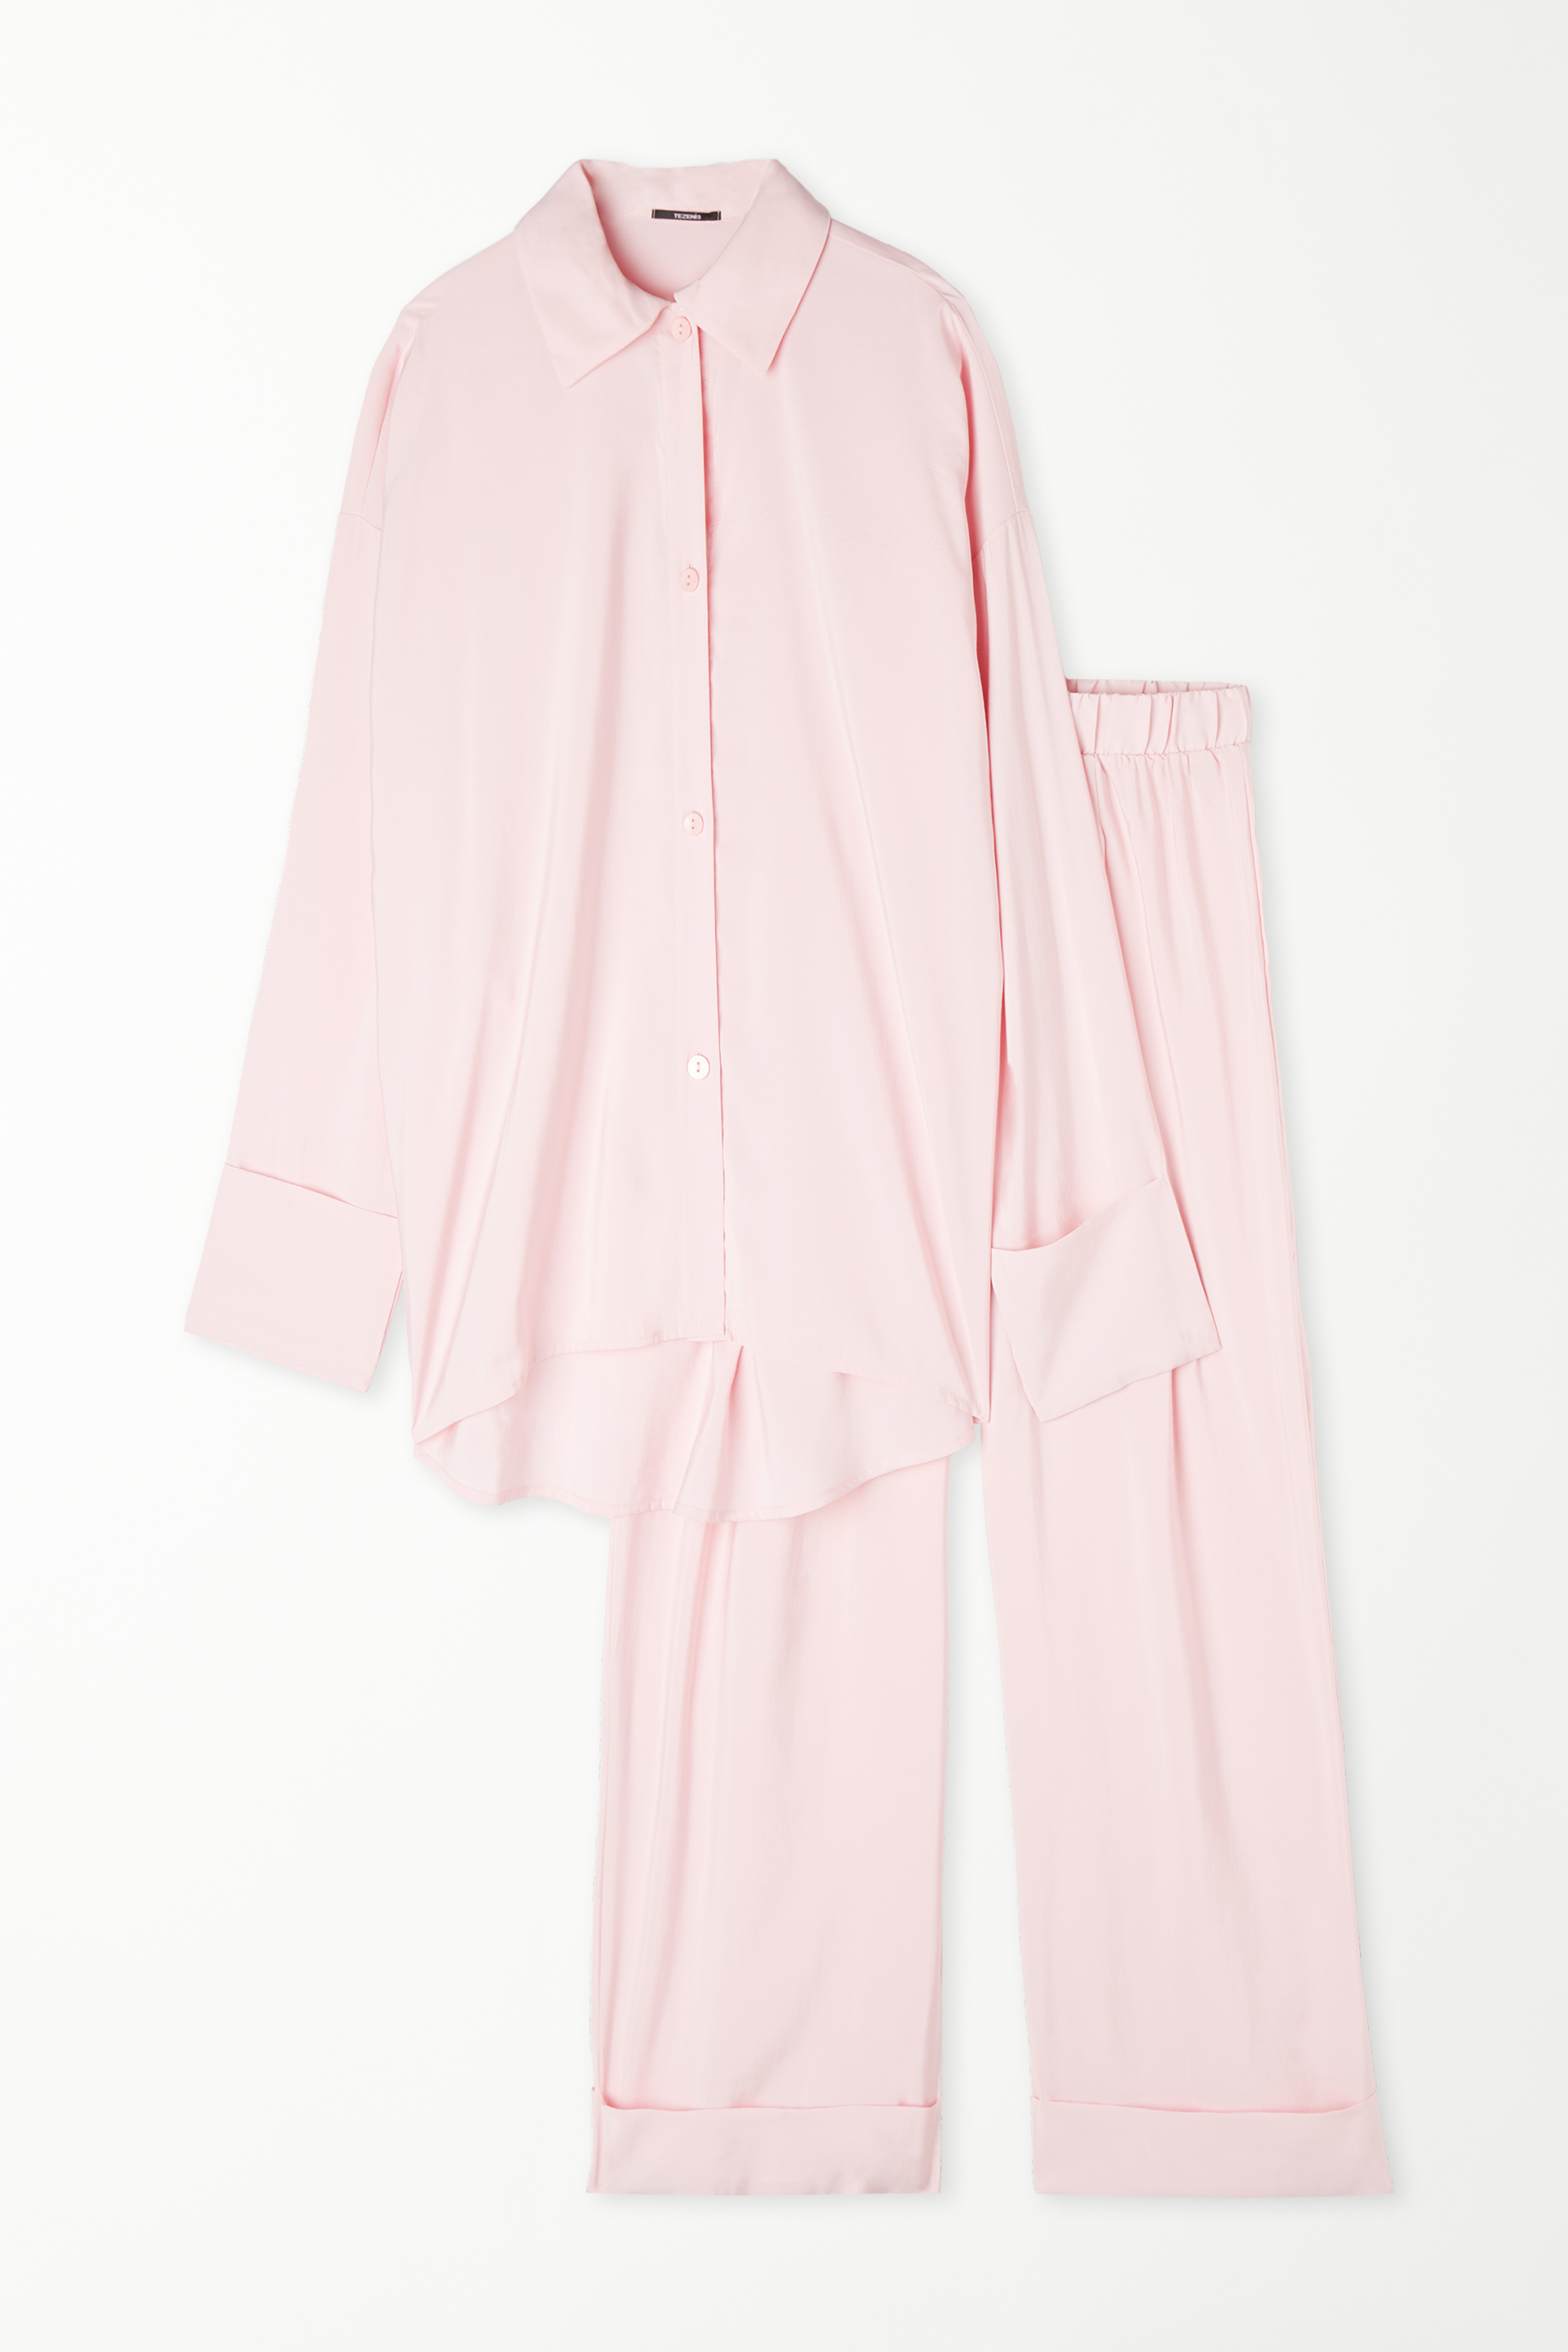 Oversized Full-Length Soft Fabric Pajamas